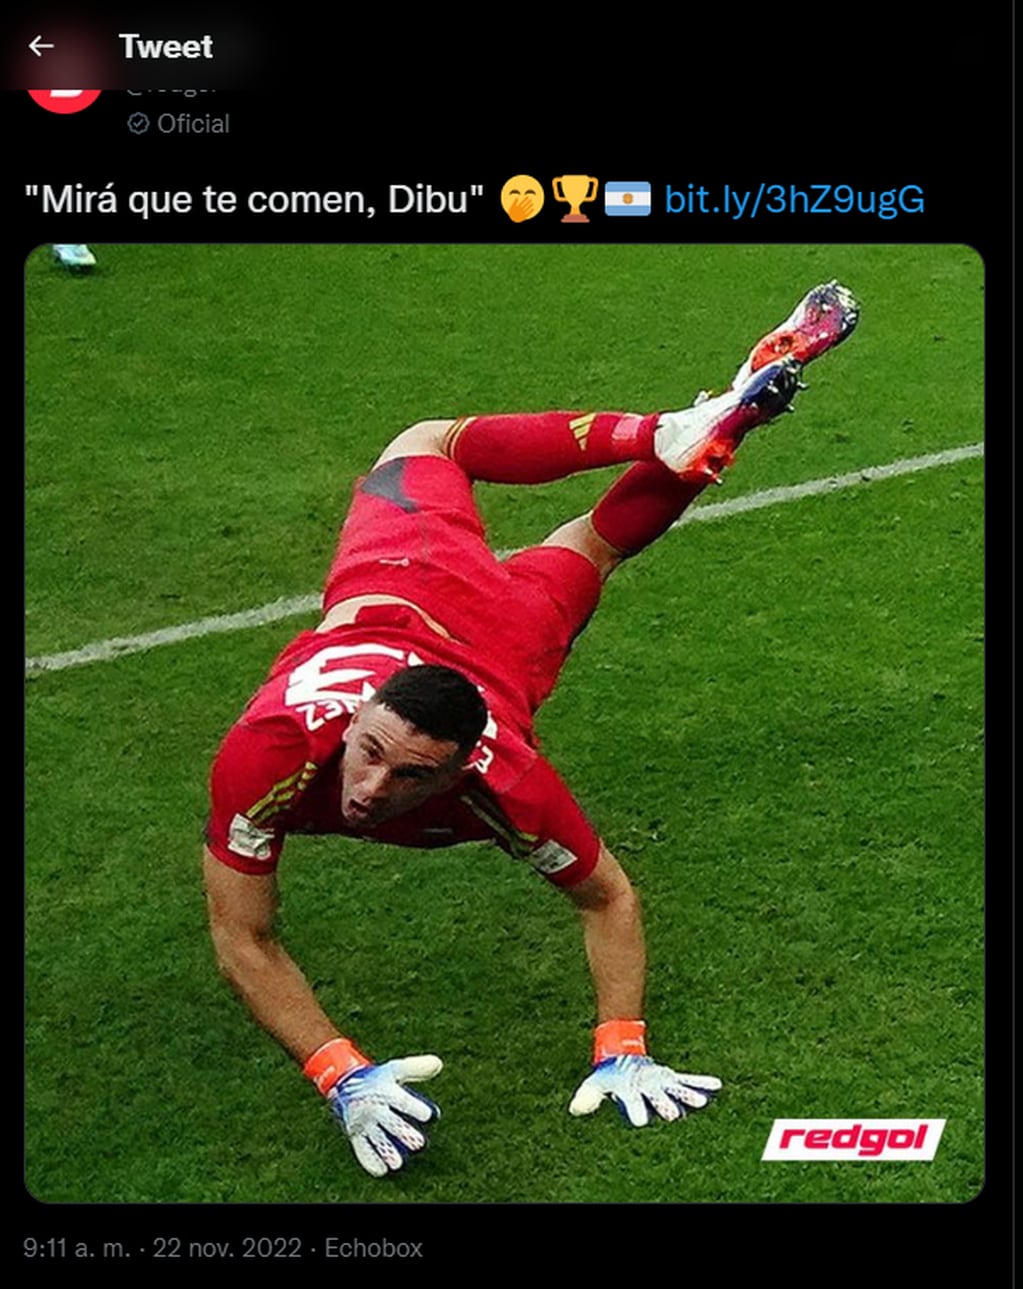 El polémico tuit contra el "Dibu" Martínez, arquero de la Selección Argentina.